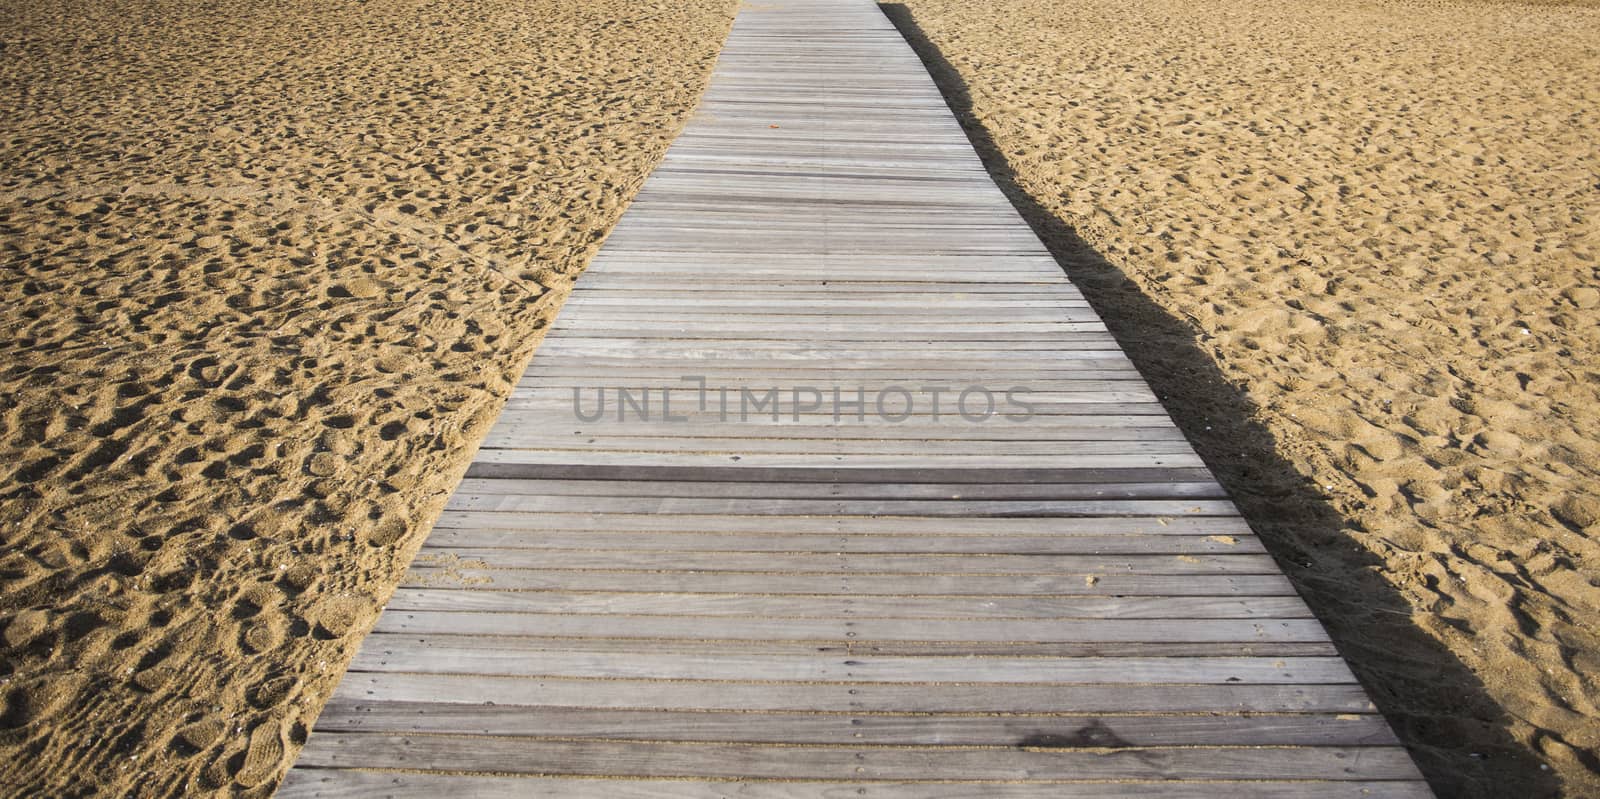 Wood bridge on beach